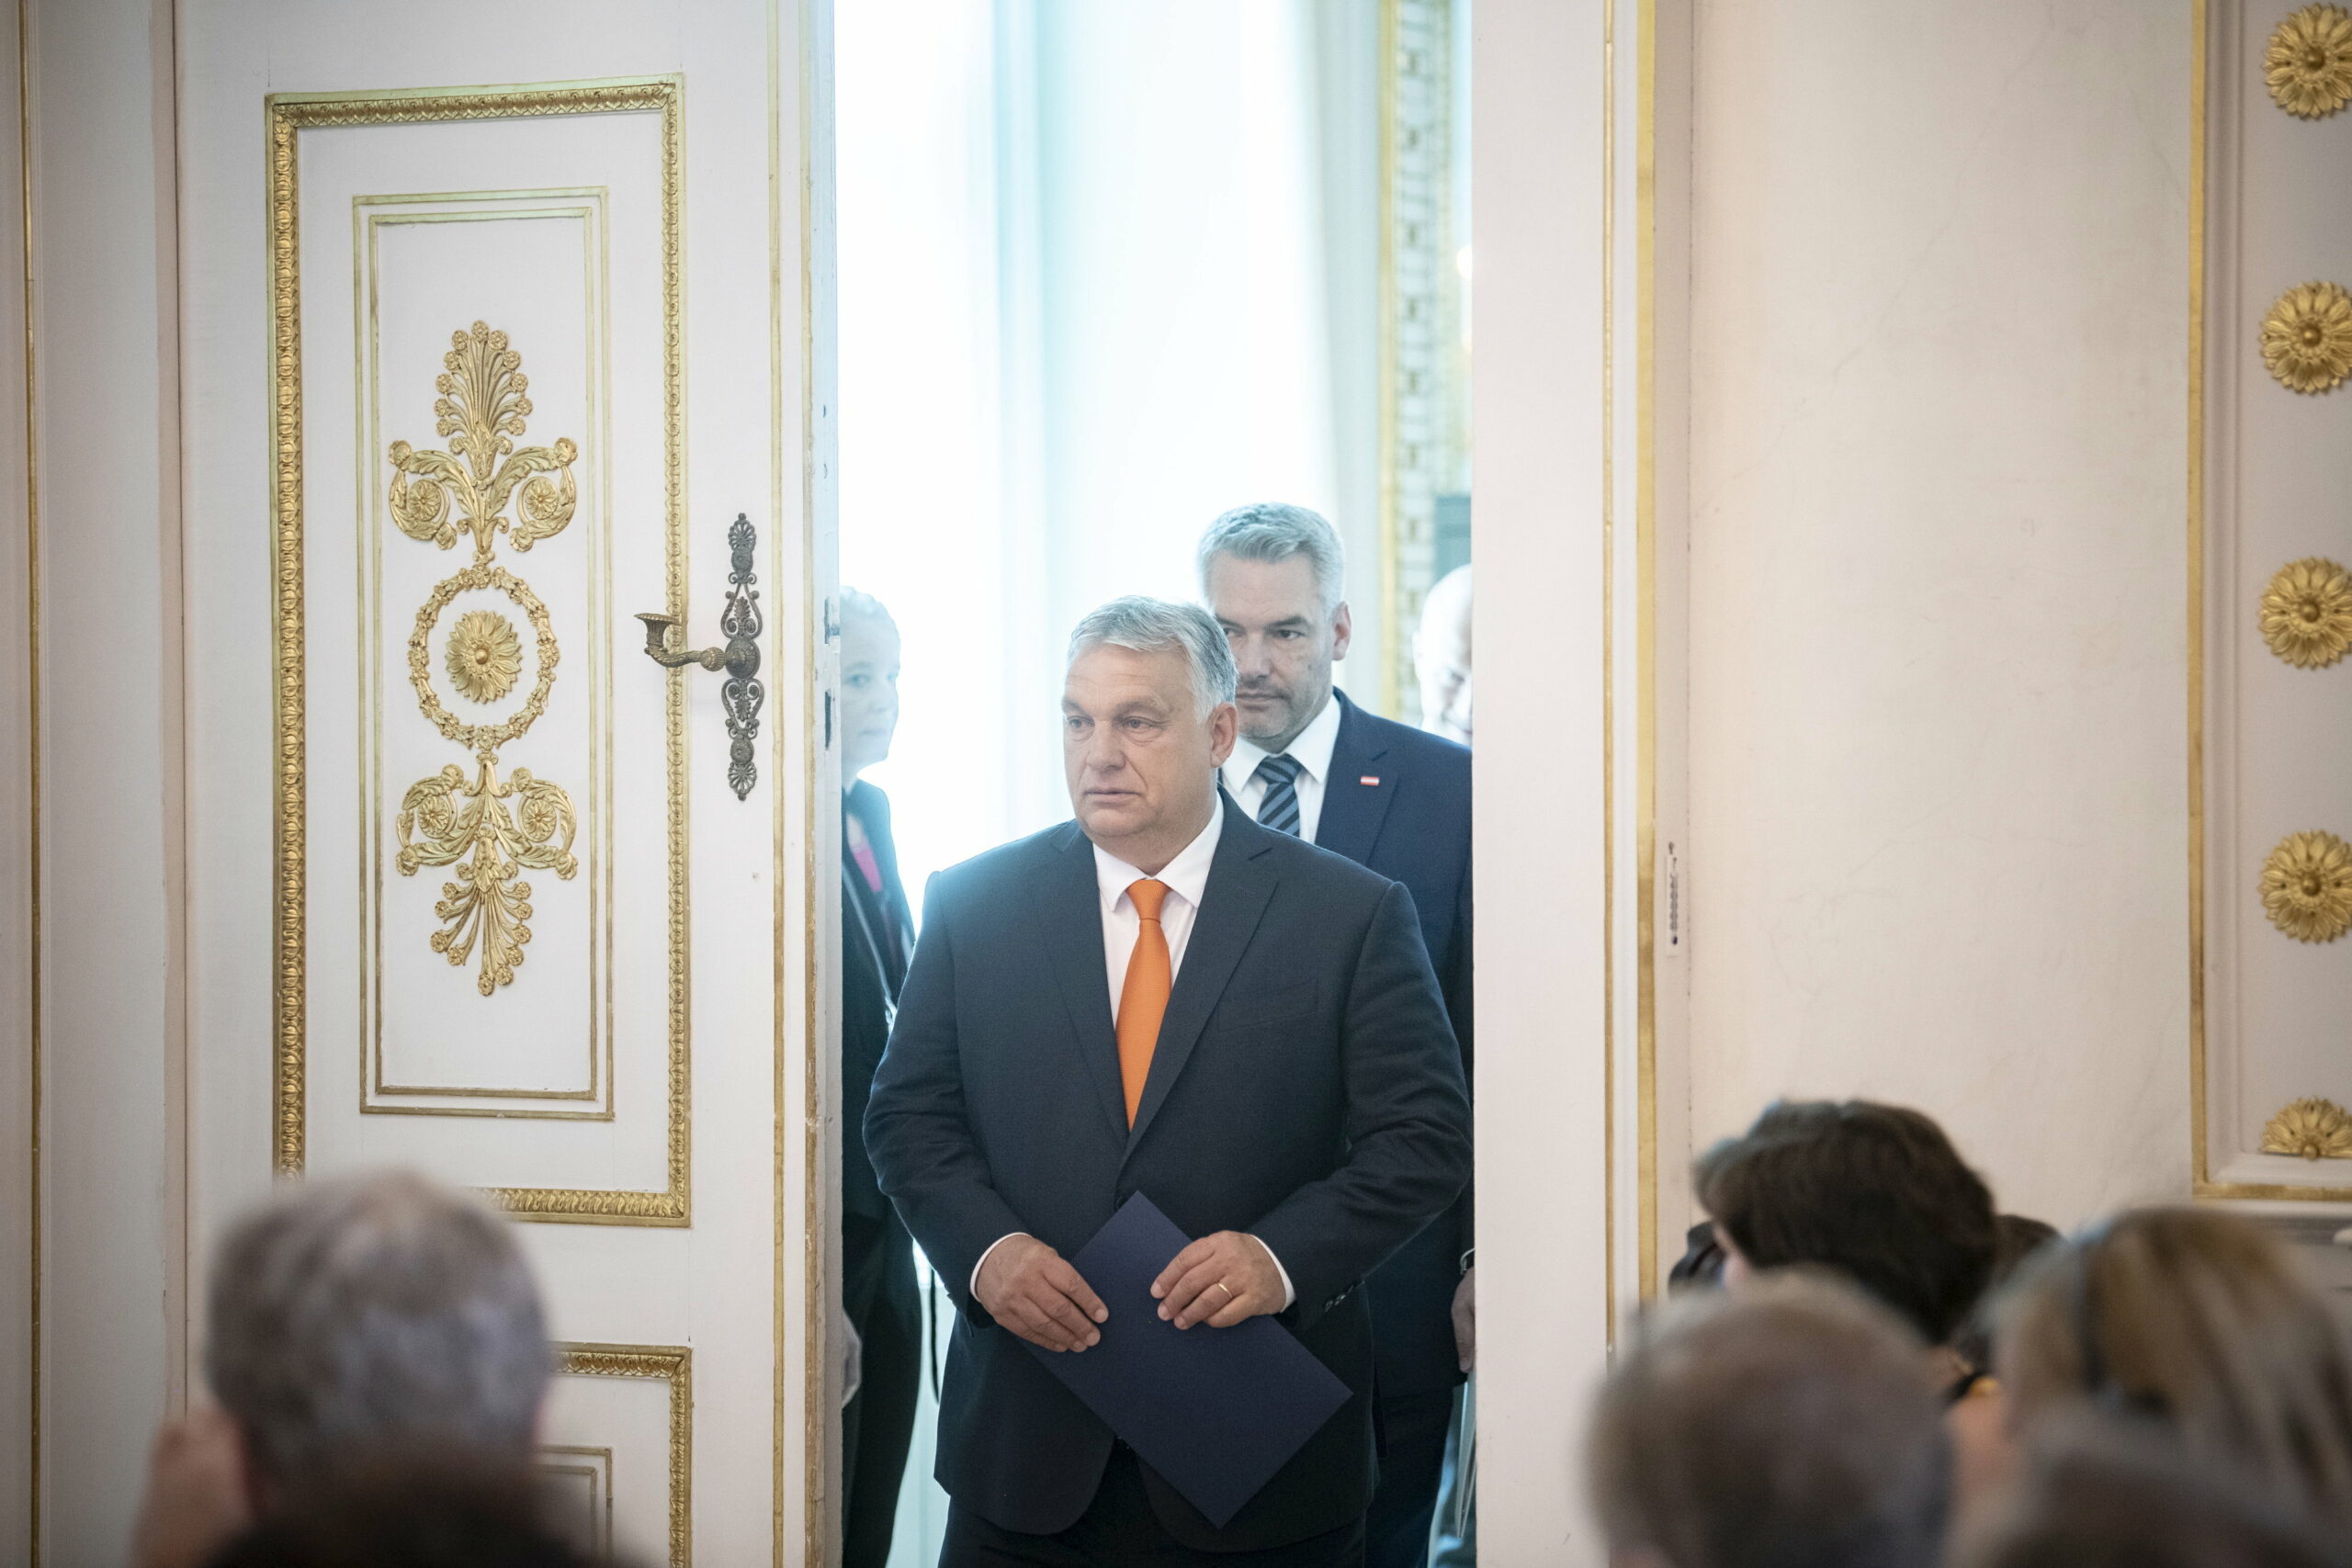 Kiderült, hogy hány millióba került Orbán Viktor bécsi útja